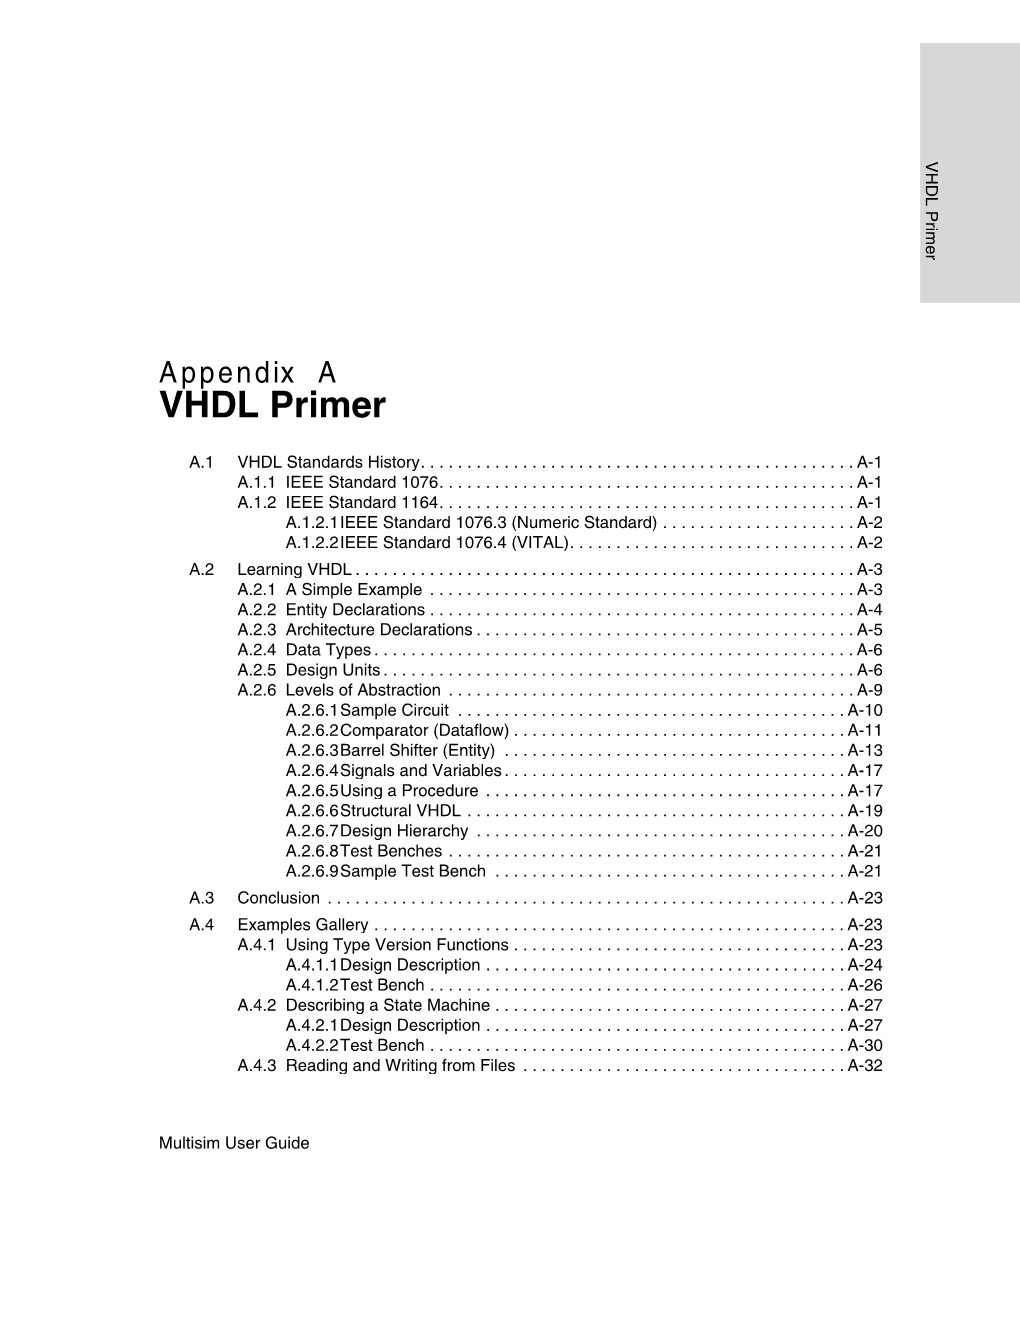 VHDL Primer 23